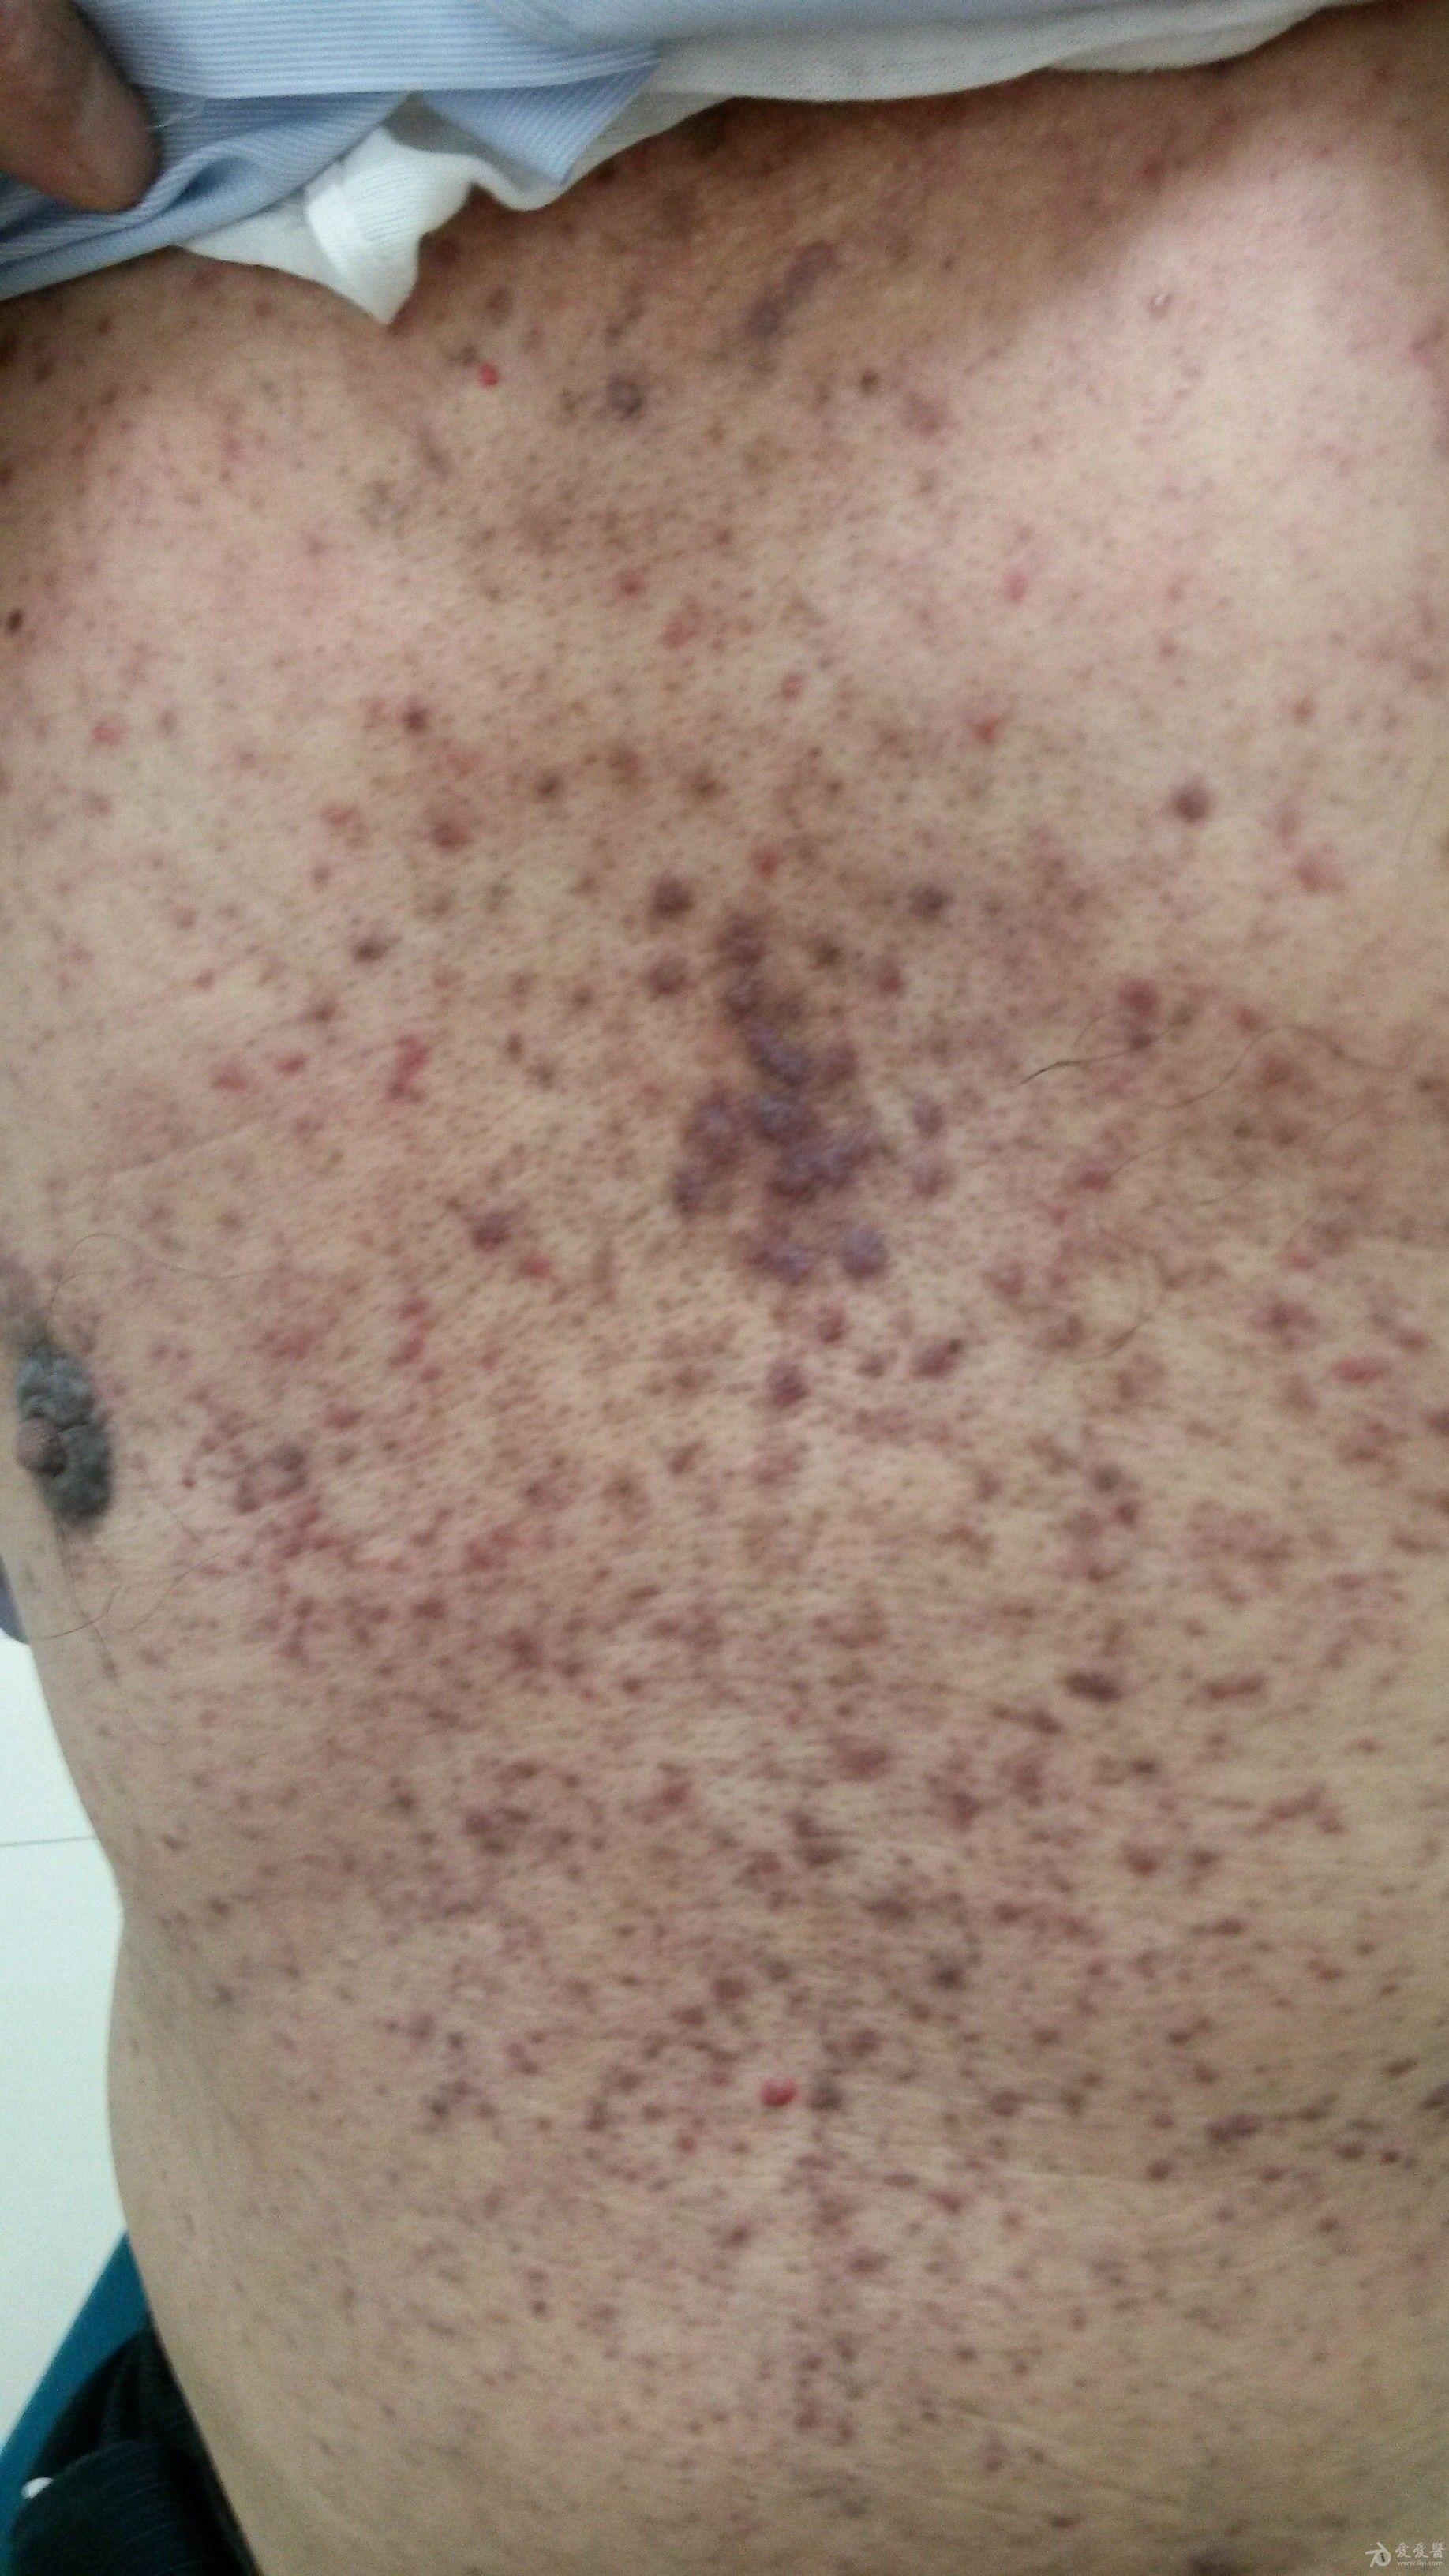 患者男性,62岁,全身斑疹丘疹微痒1年余.